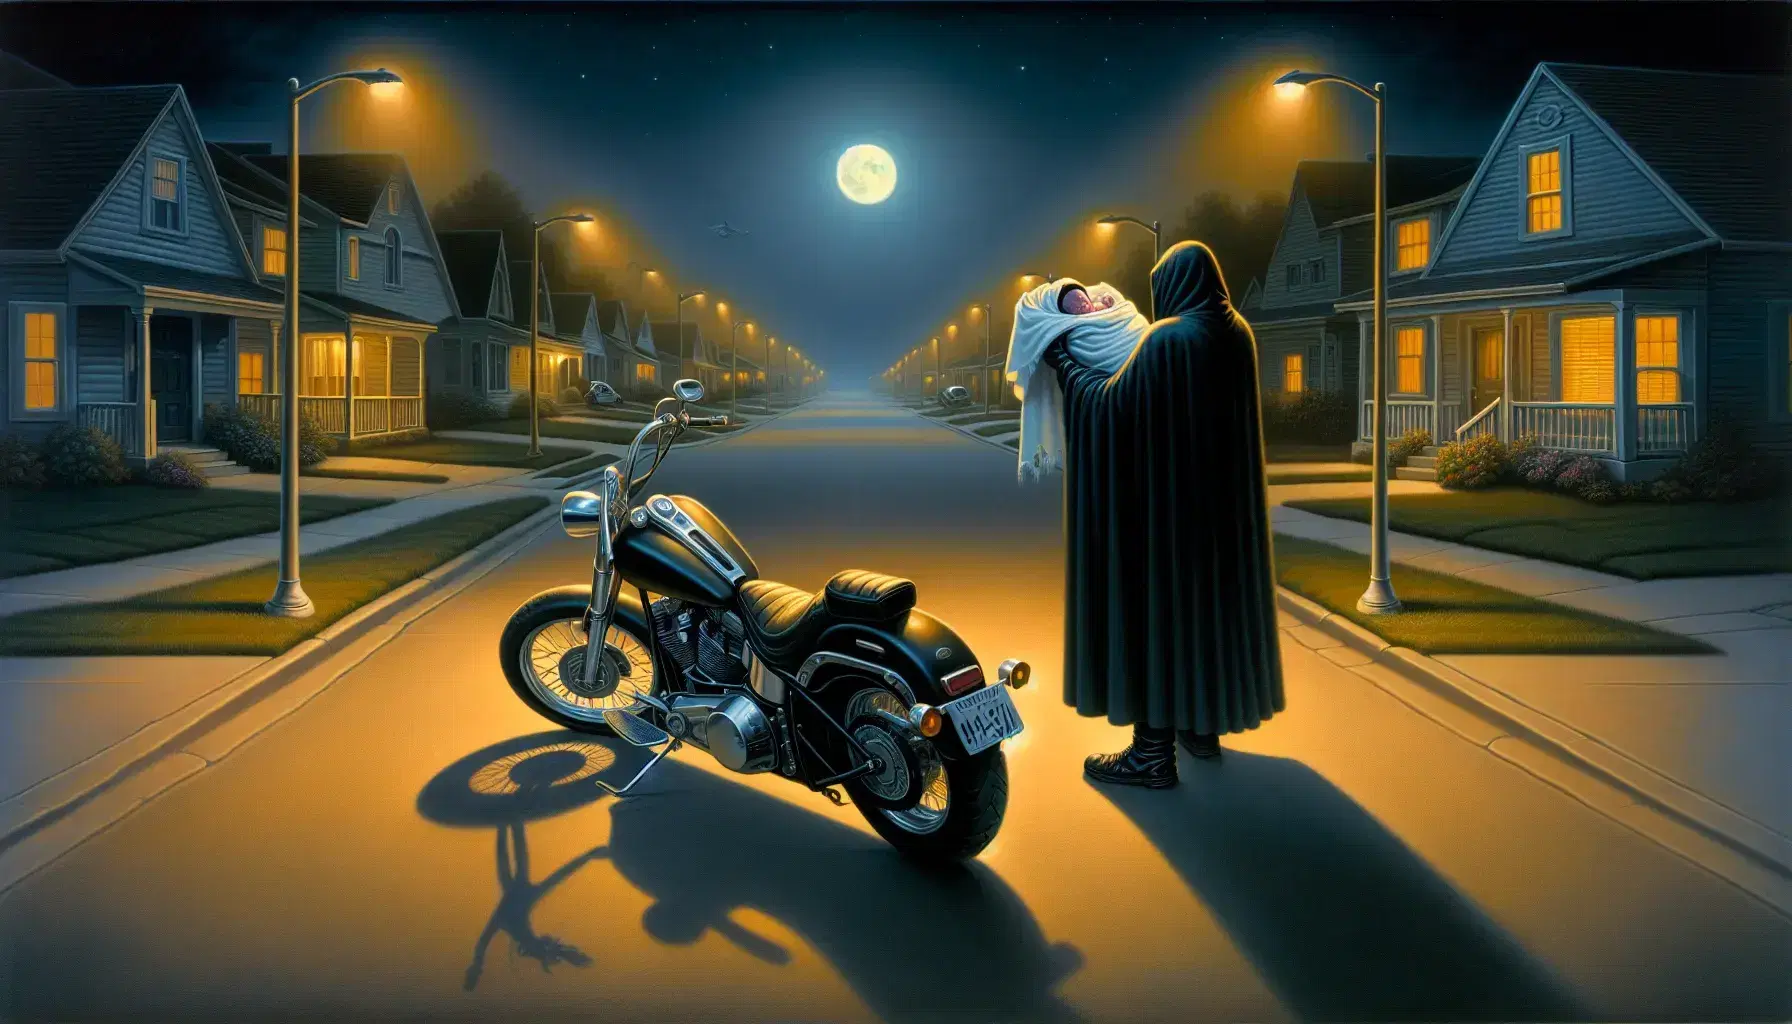 Scena notturna in periferia con uomo in mantello che tiene neonato avvolto in coperta vicino a moto nera parcheggiata sotto la luna piena.